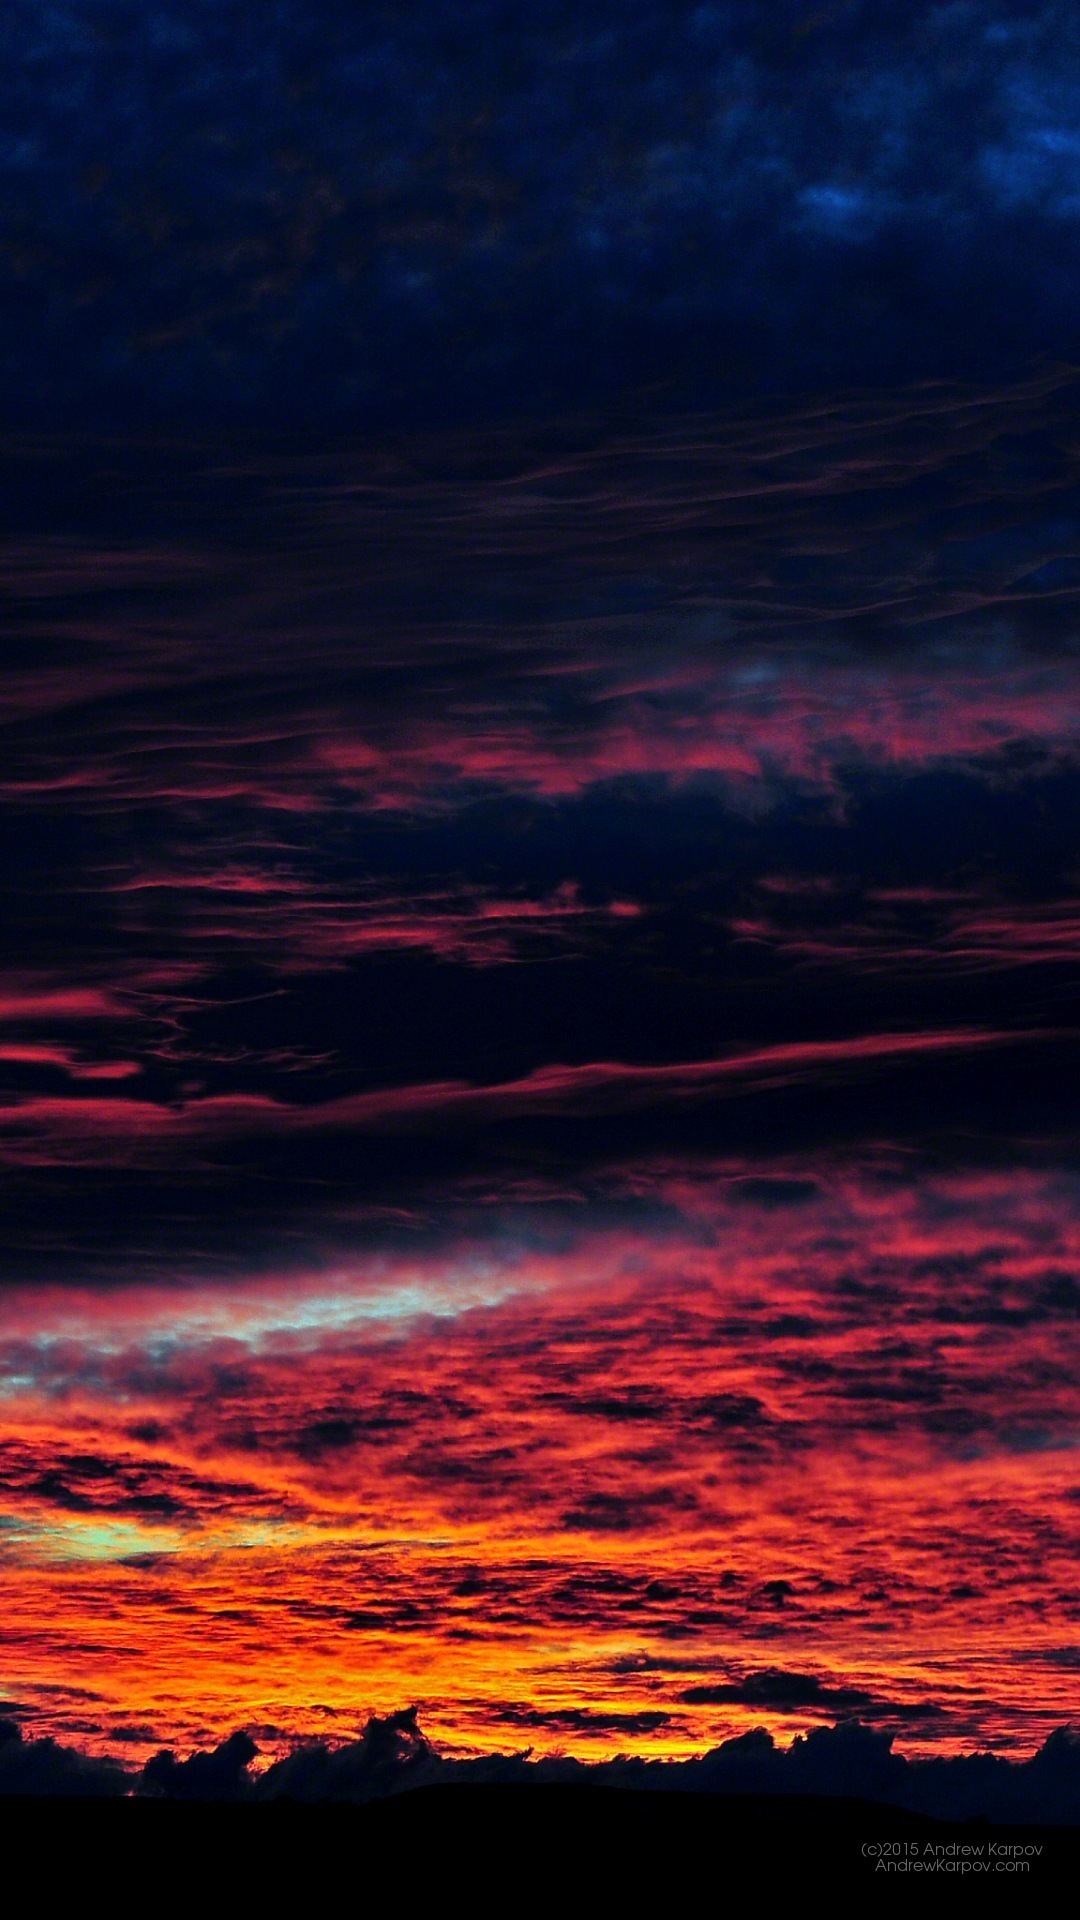 사진 바탕 화면,하늘,잔광,아침에 붉은 하늘,빨간,수평선